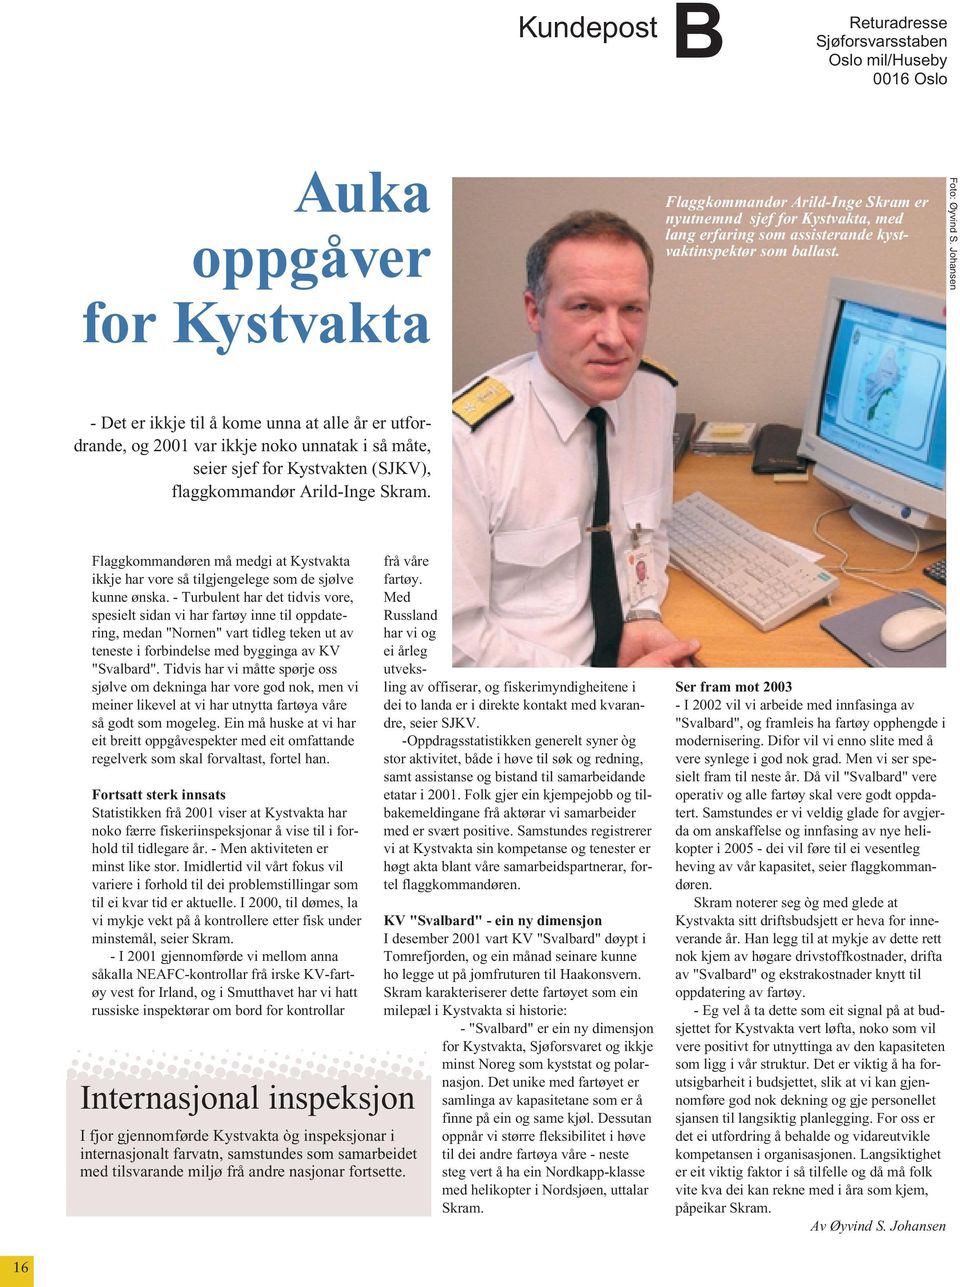 Johansen - Det er ikkje til å kome unna at alle år er utfordrande, og 2001 var ikkje noko unnatak i så måte, seier sjef for Kystvakten (SJKV), flaggkommandør Arild-Inge Skram.